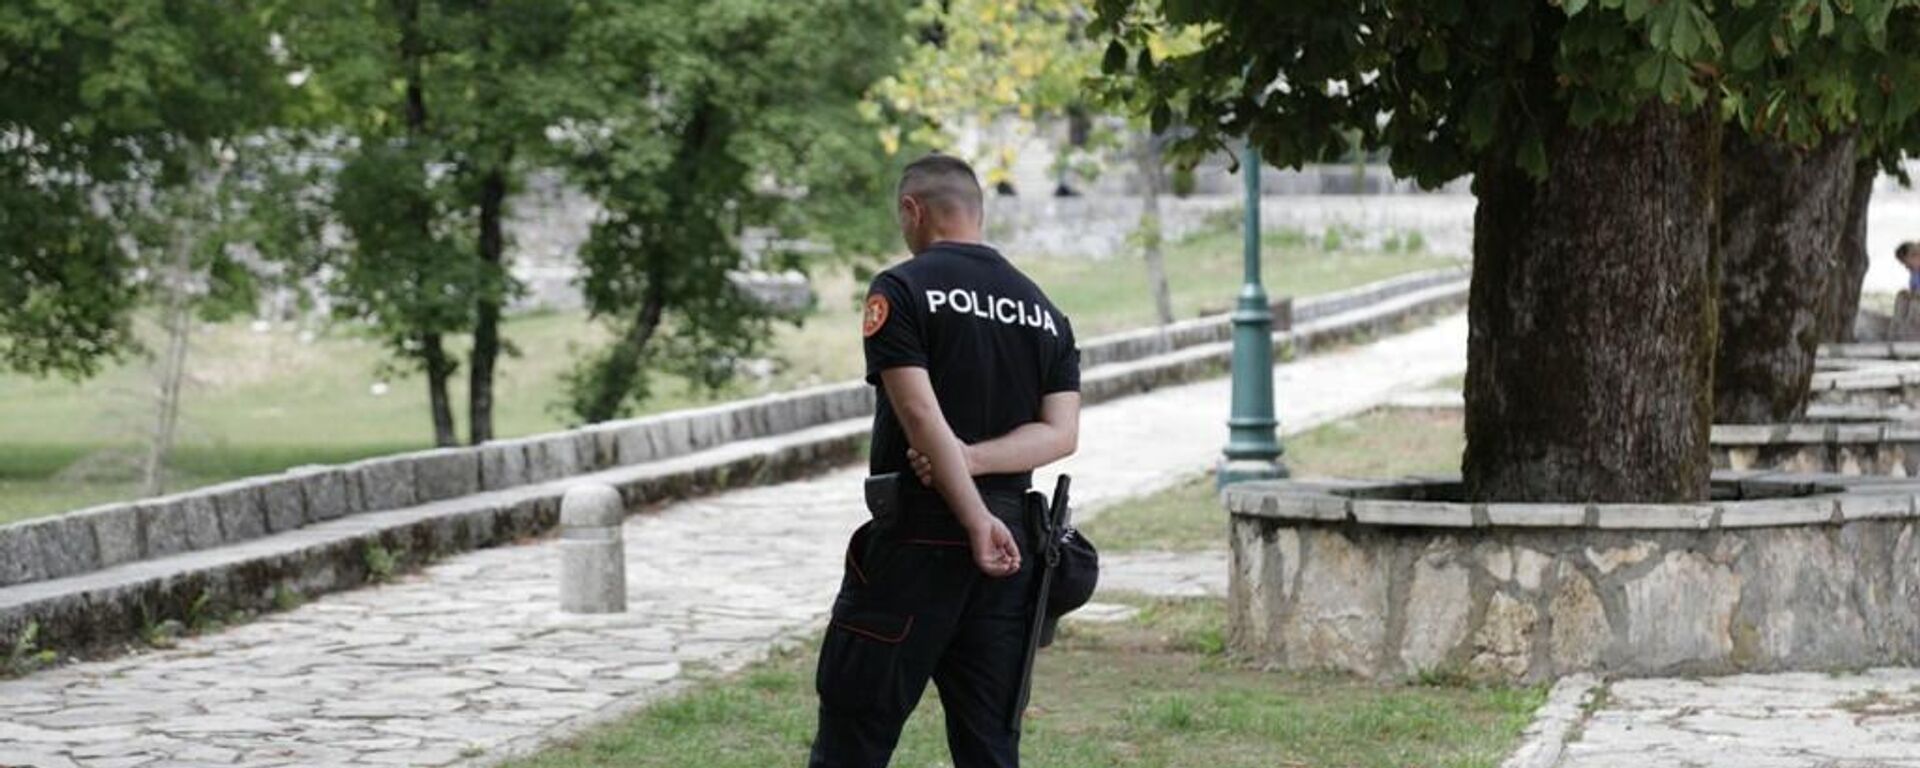 Policija dežura u kompleksu Cetinjskog manastira - Sputnik Srbija, 1920, 17.09.2021